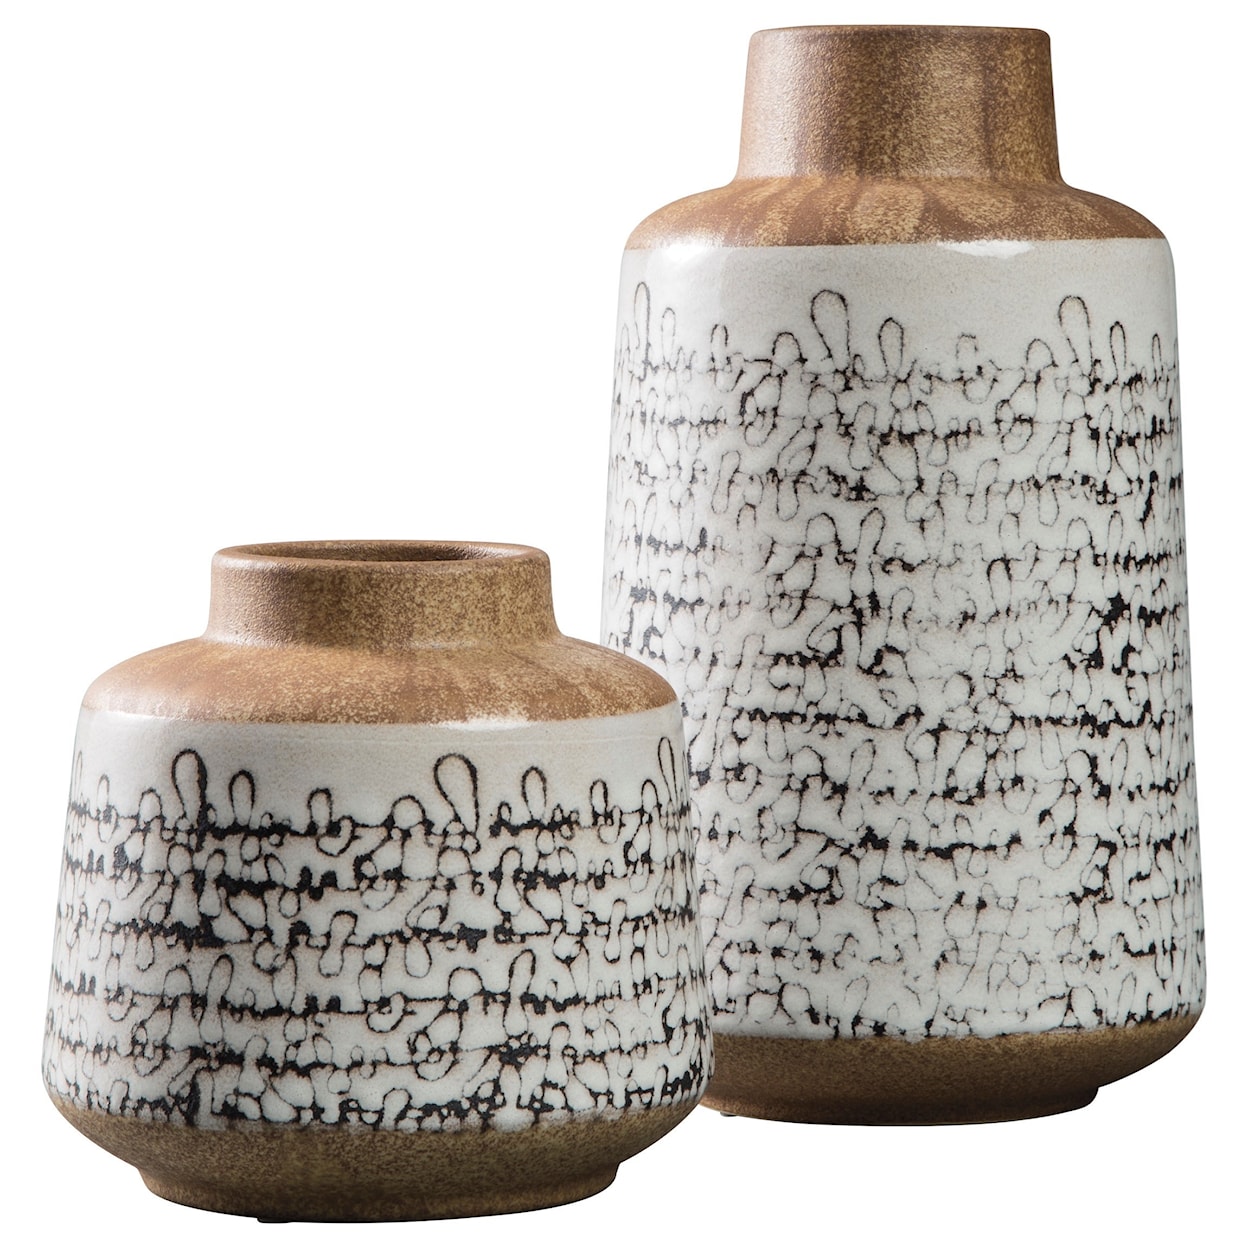 Signature Design Accents Meghan Tan/Black Vase Set